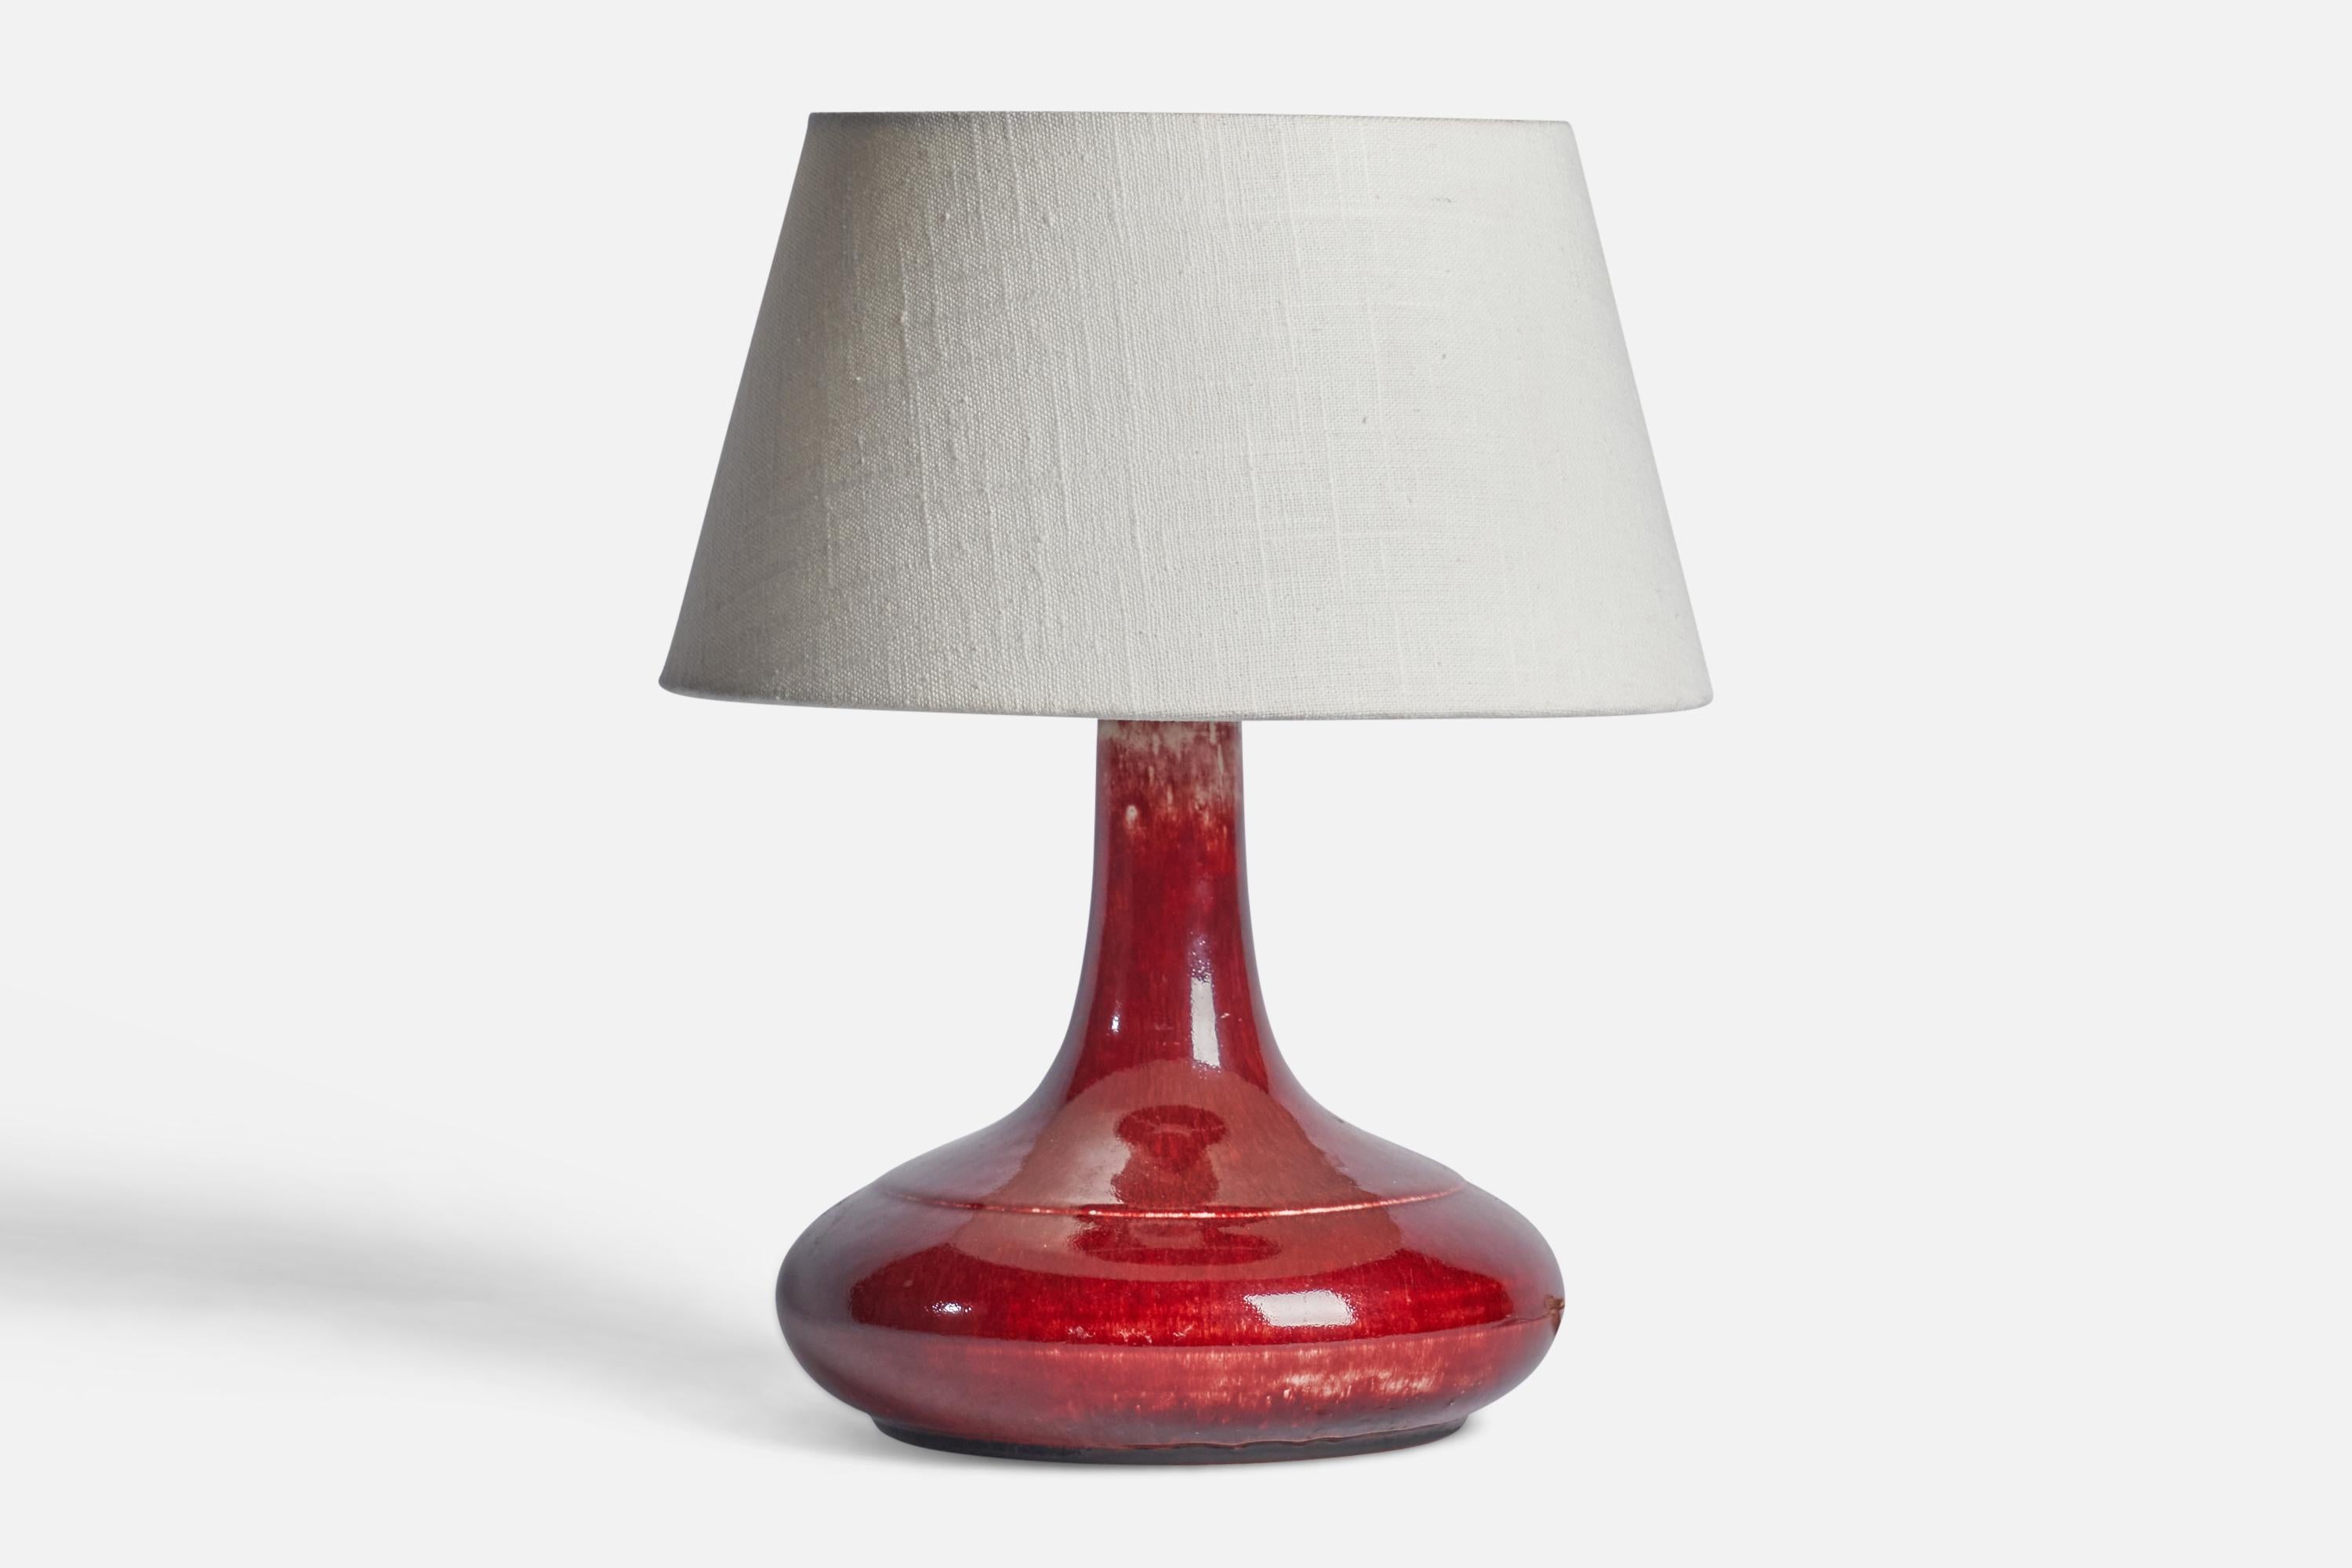 Tischlampe aus rot glasiertem Steingut, entworfen und hergestellt von Desiree, Dänemark, 1960er Jahre.

Abmessungen der Lampe (Zoll): 9,5